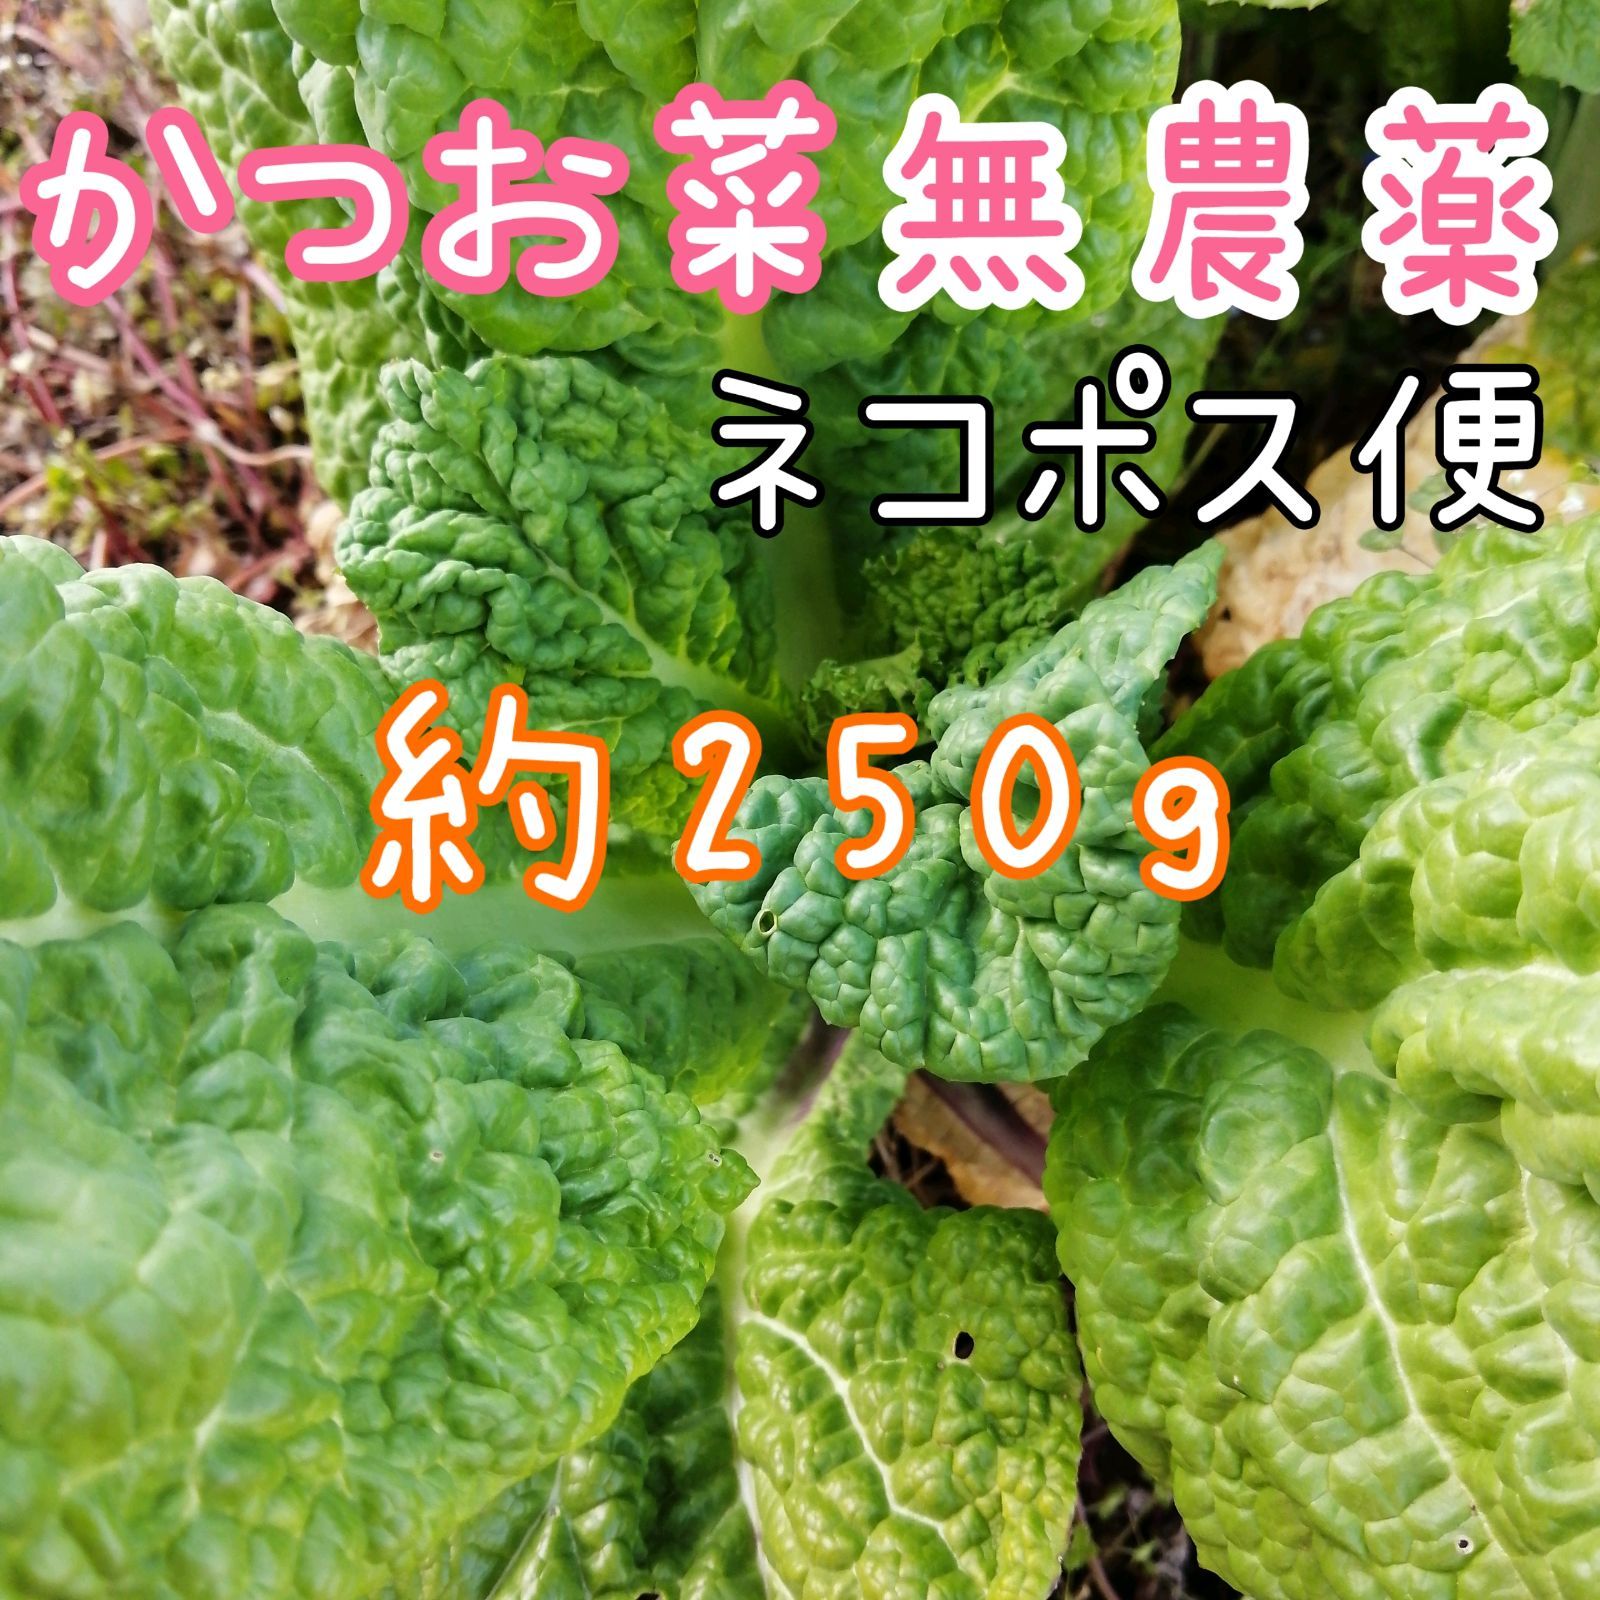 メルカリshops 新鮮 採りたて 無農薬 神奈川産 250g かつお菜 カツオ菜 勝男菜